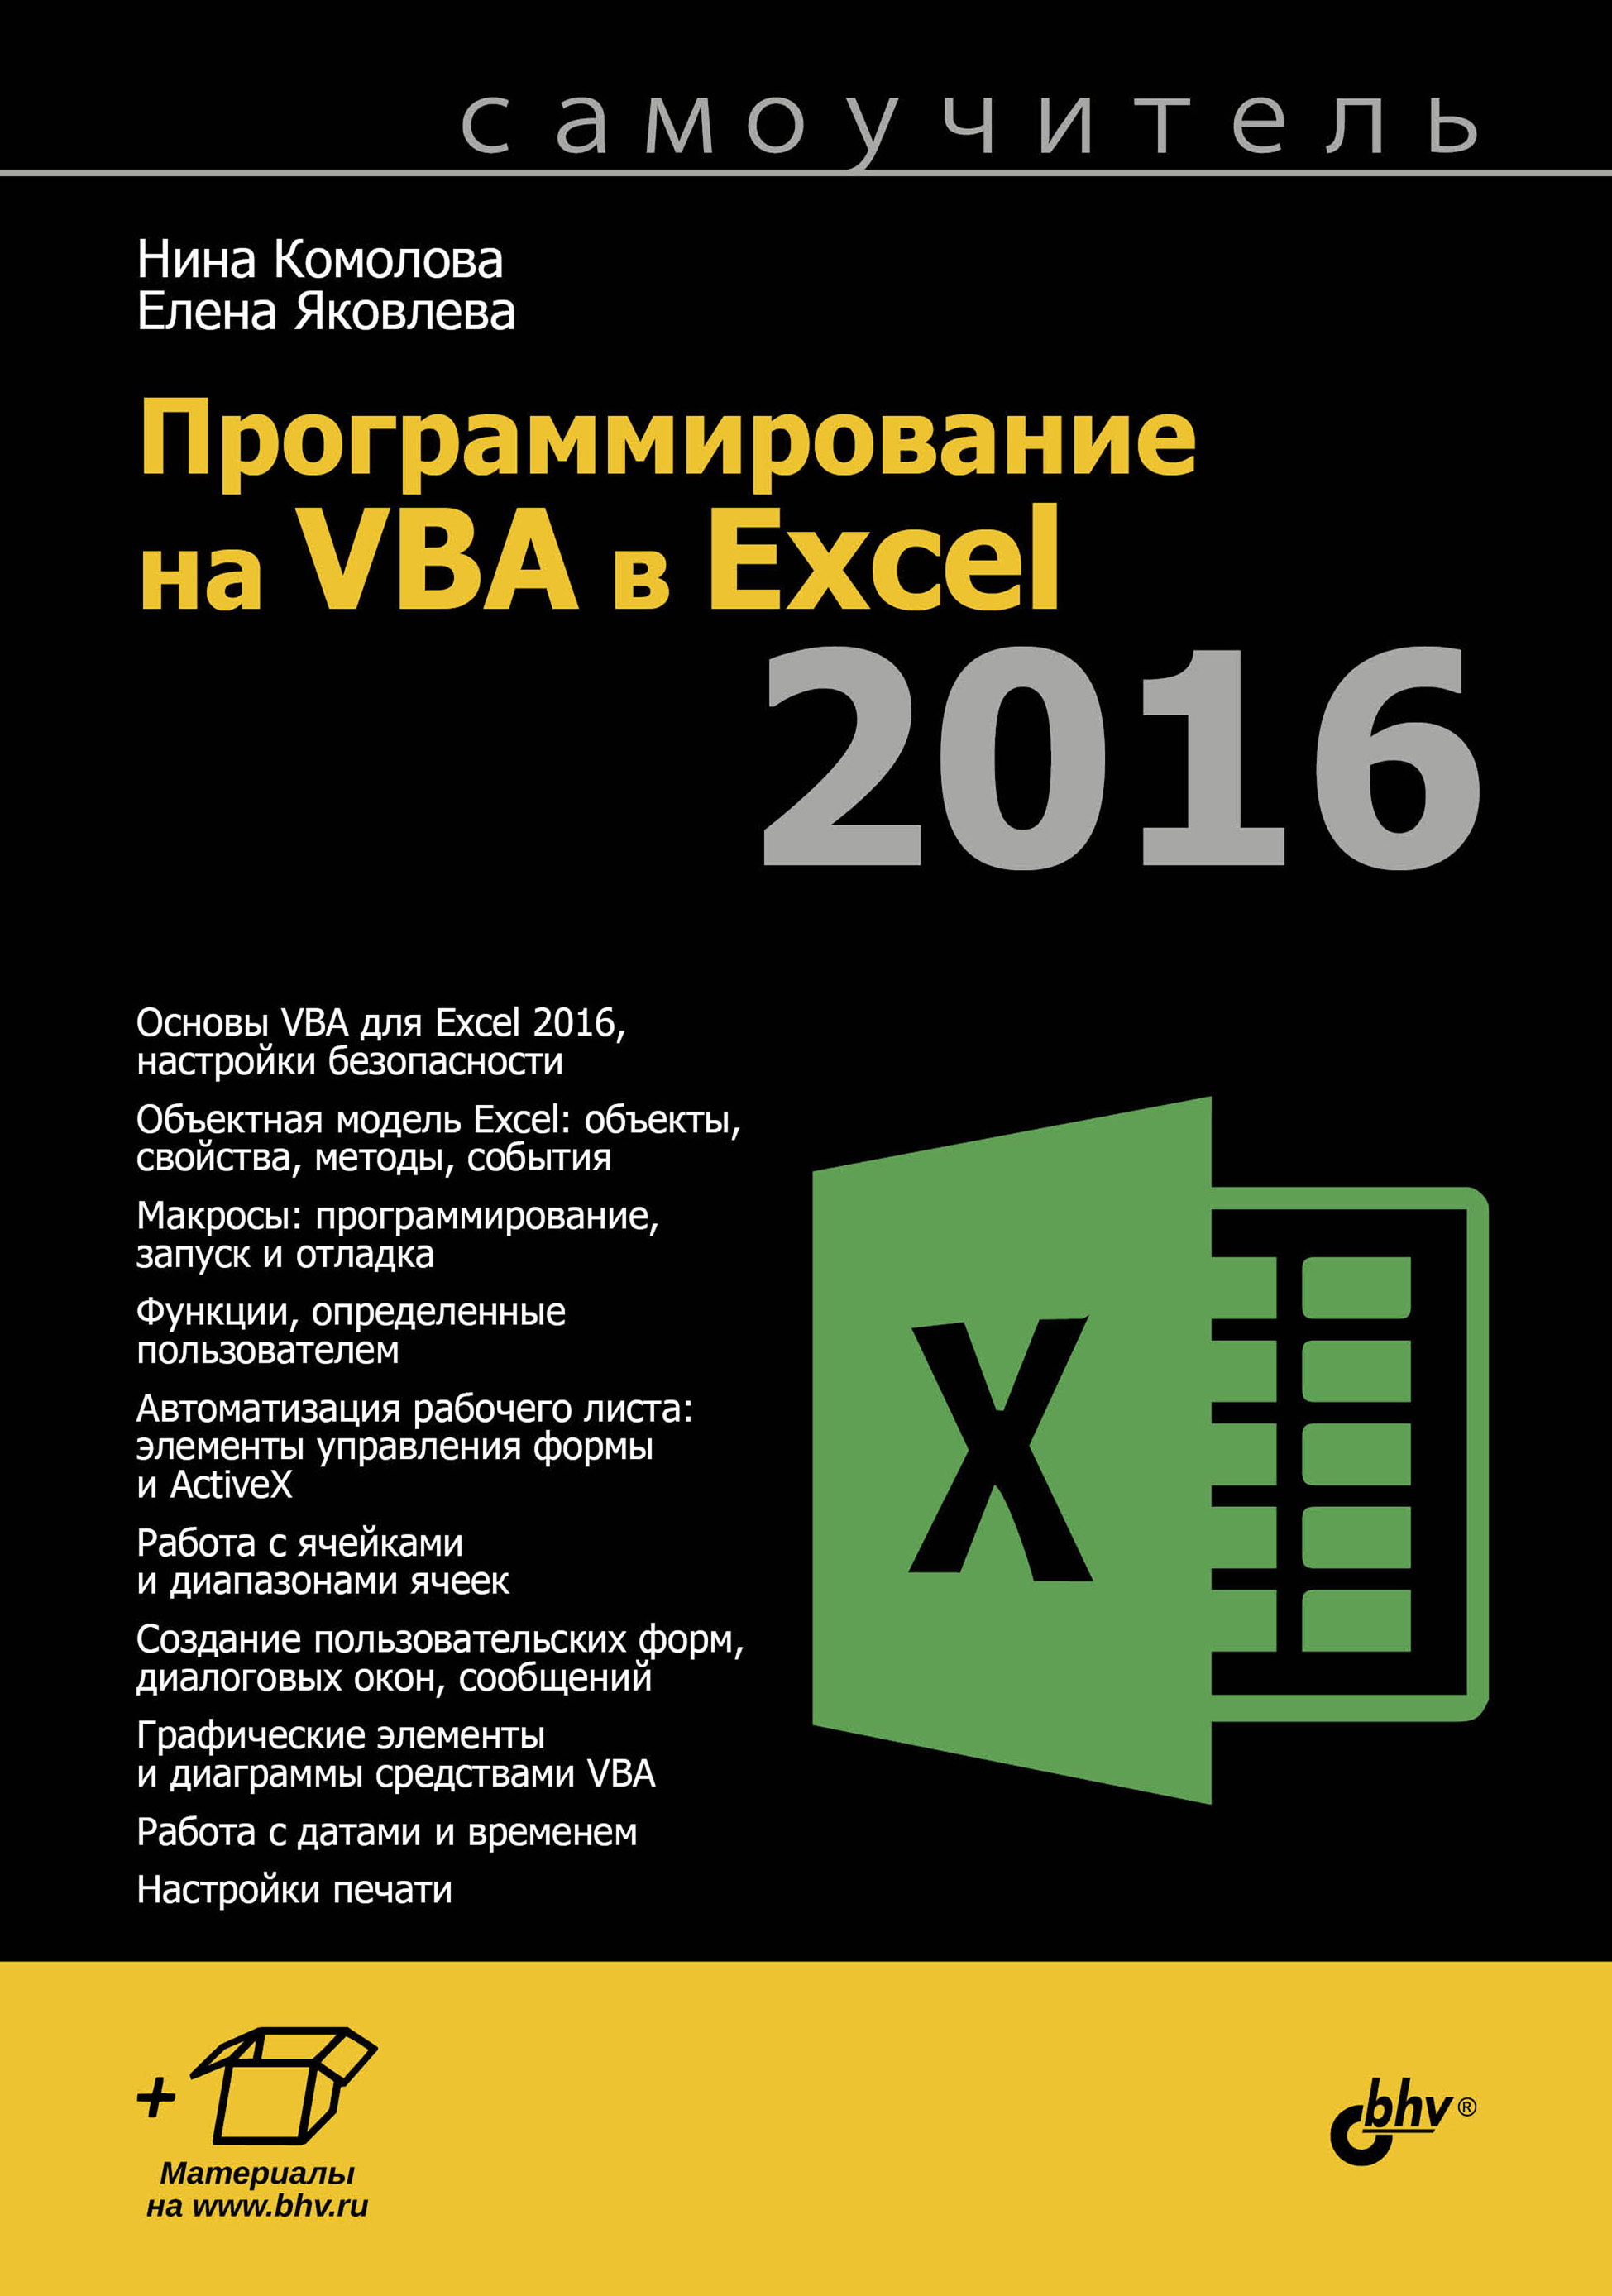 Книга Самоучитель (BHV) Программирование на VBA в Excel 2016 созданная Нина Комолова, Елена Яковлева может относится к жанру программирование, программы, самоучители. Стоимость электронной книги Программирование на VBA в Excel 2016 с идентификатором 28290280 составляет 349.00 руб.